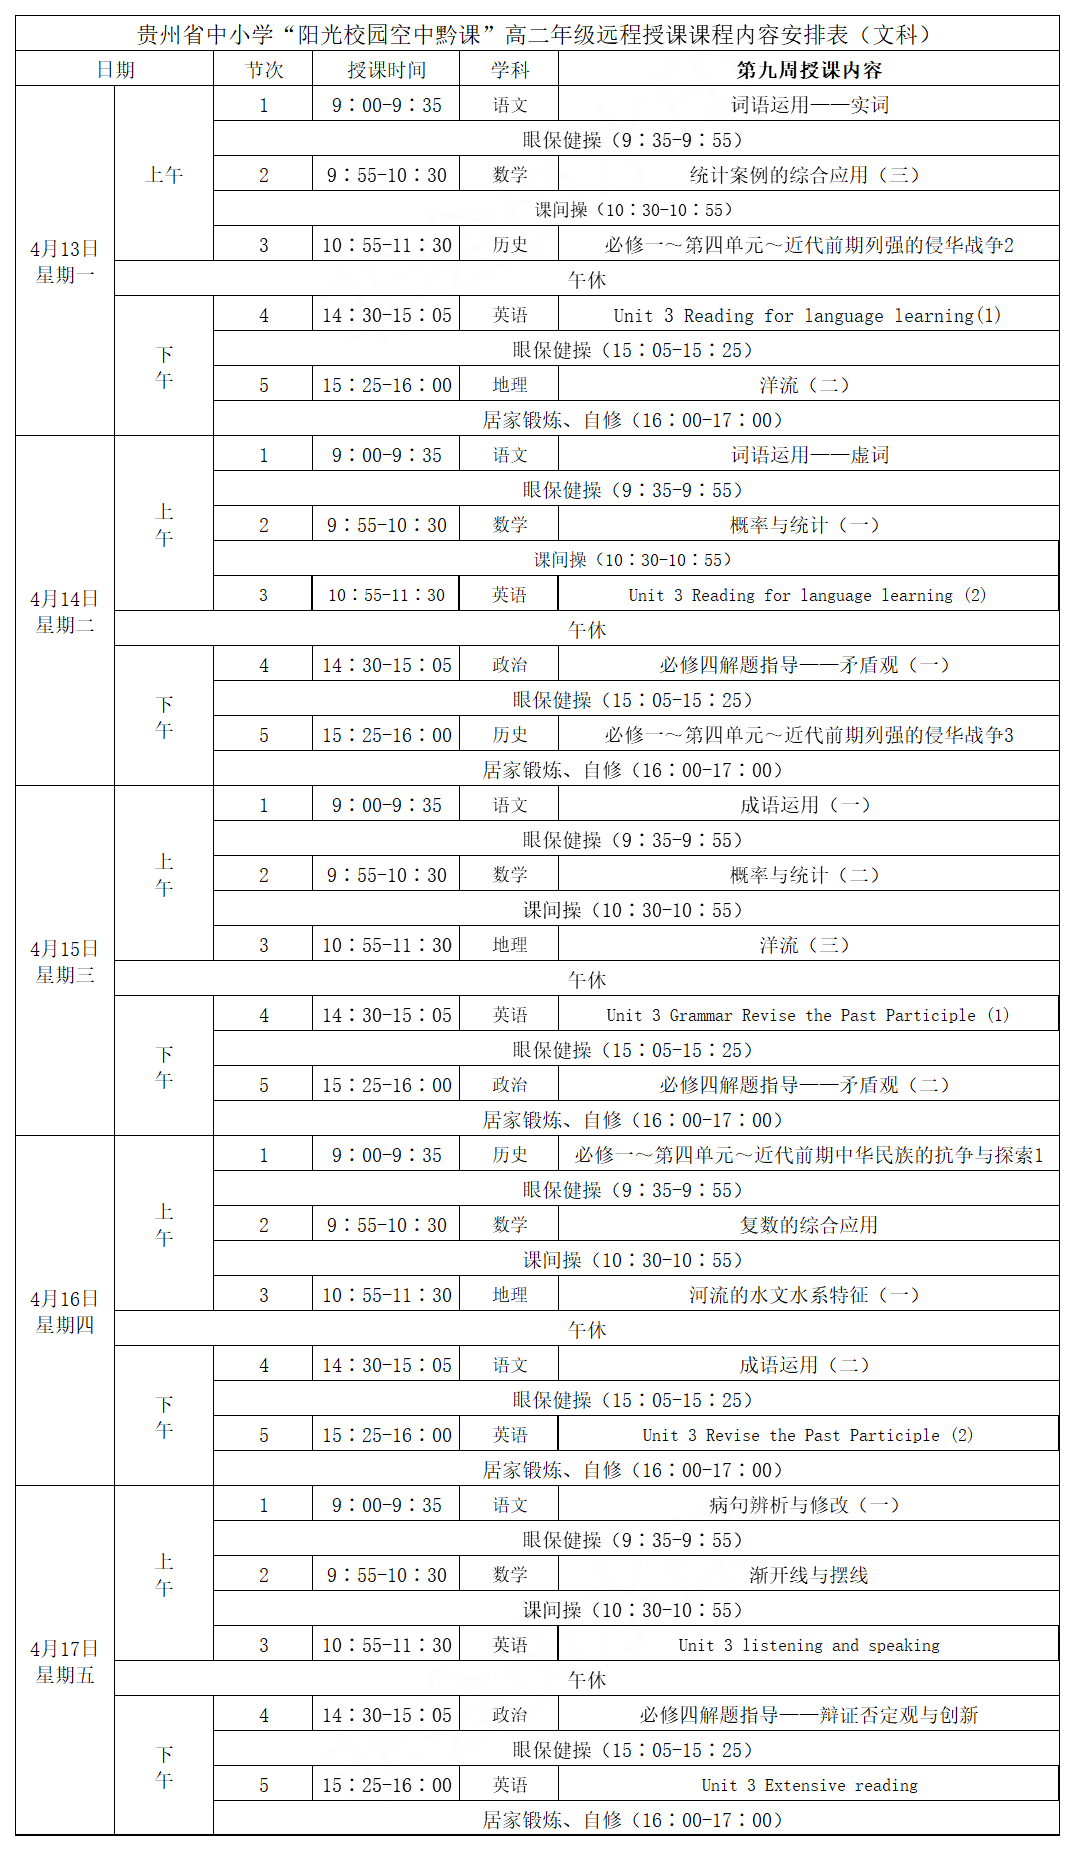 贵州中小学“空中课堂”课程表完整版公布（4月13日7